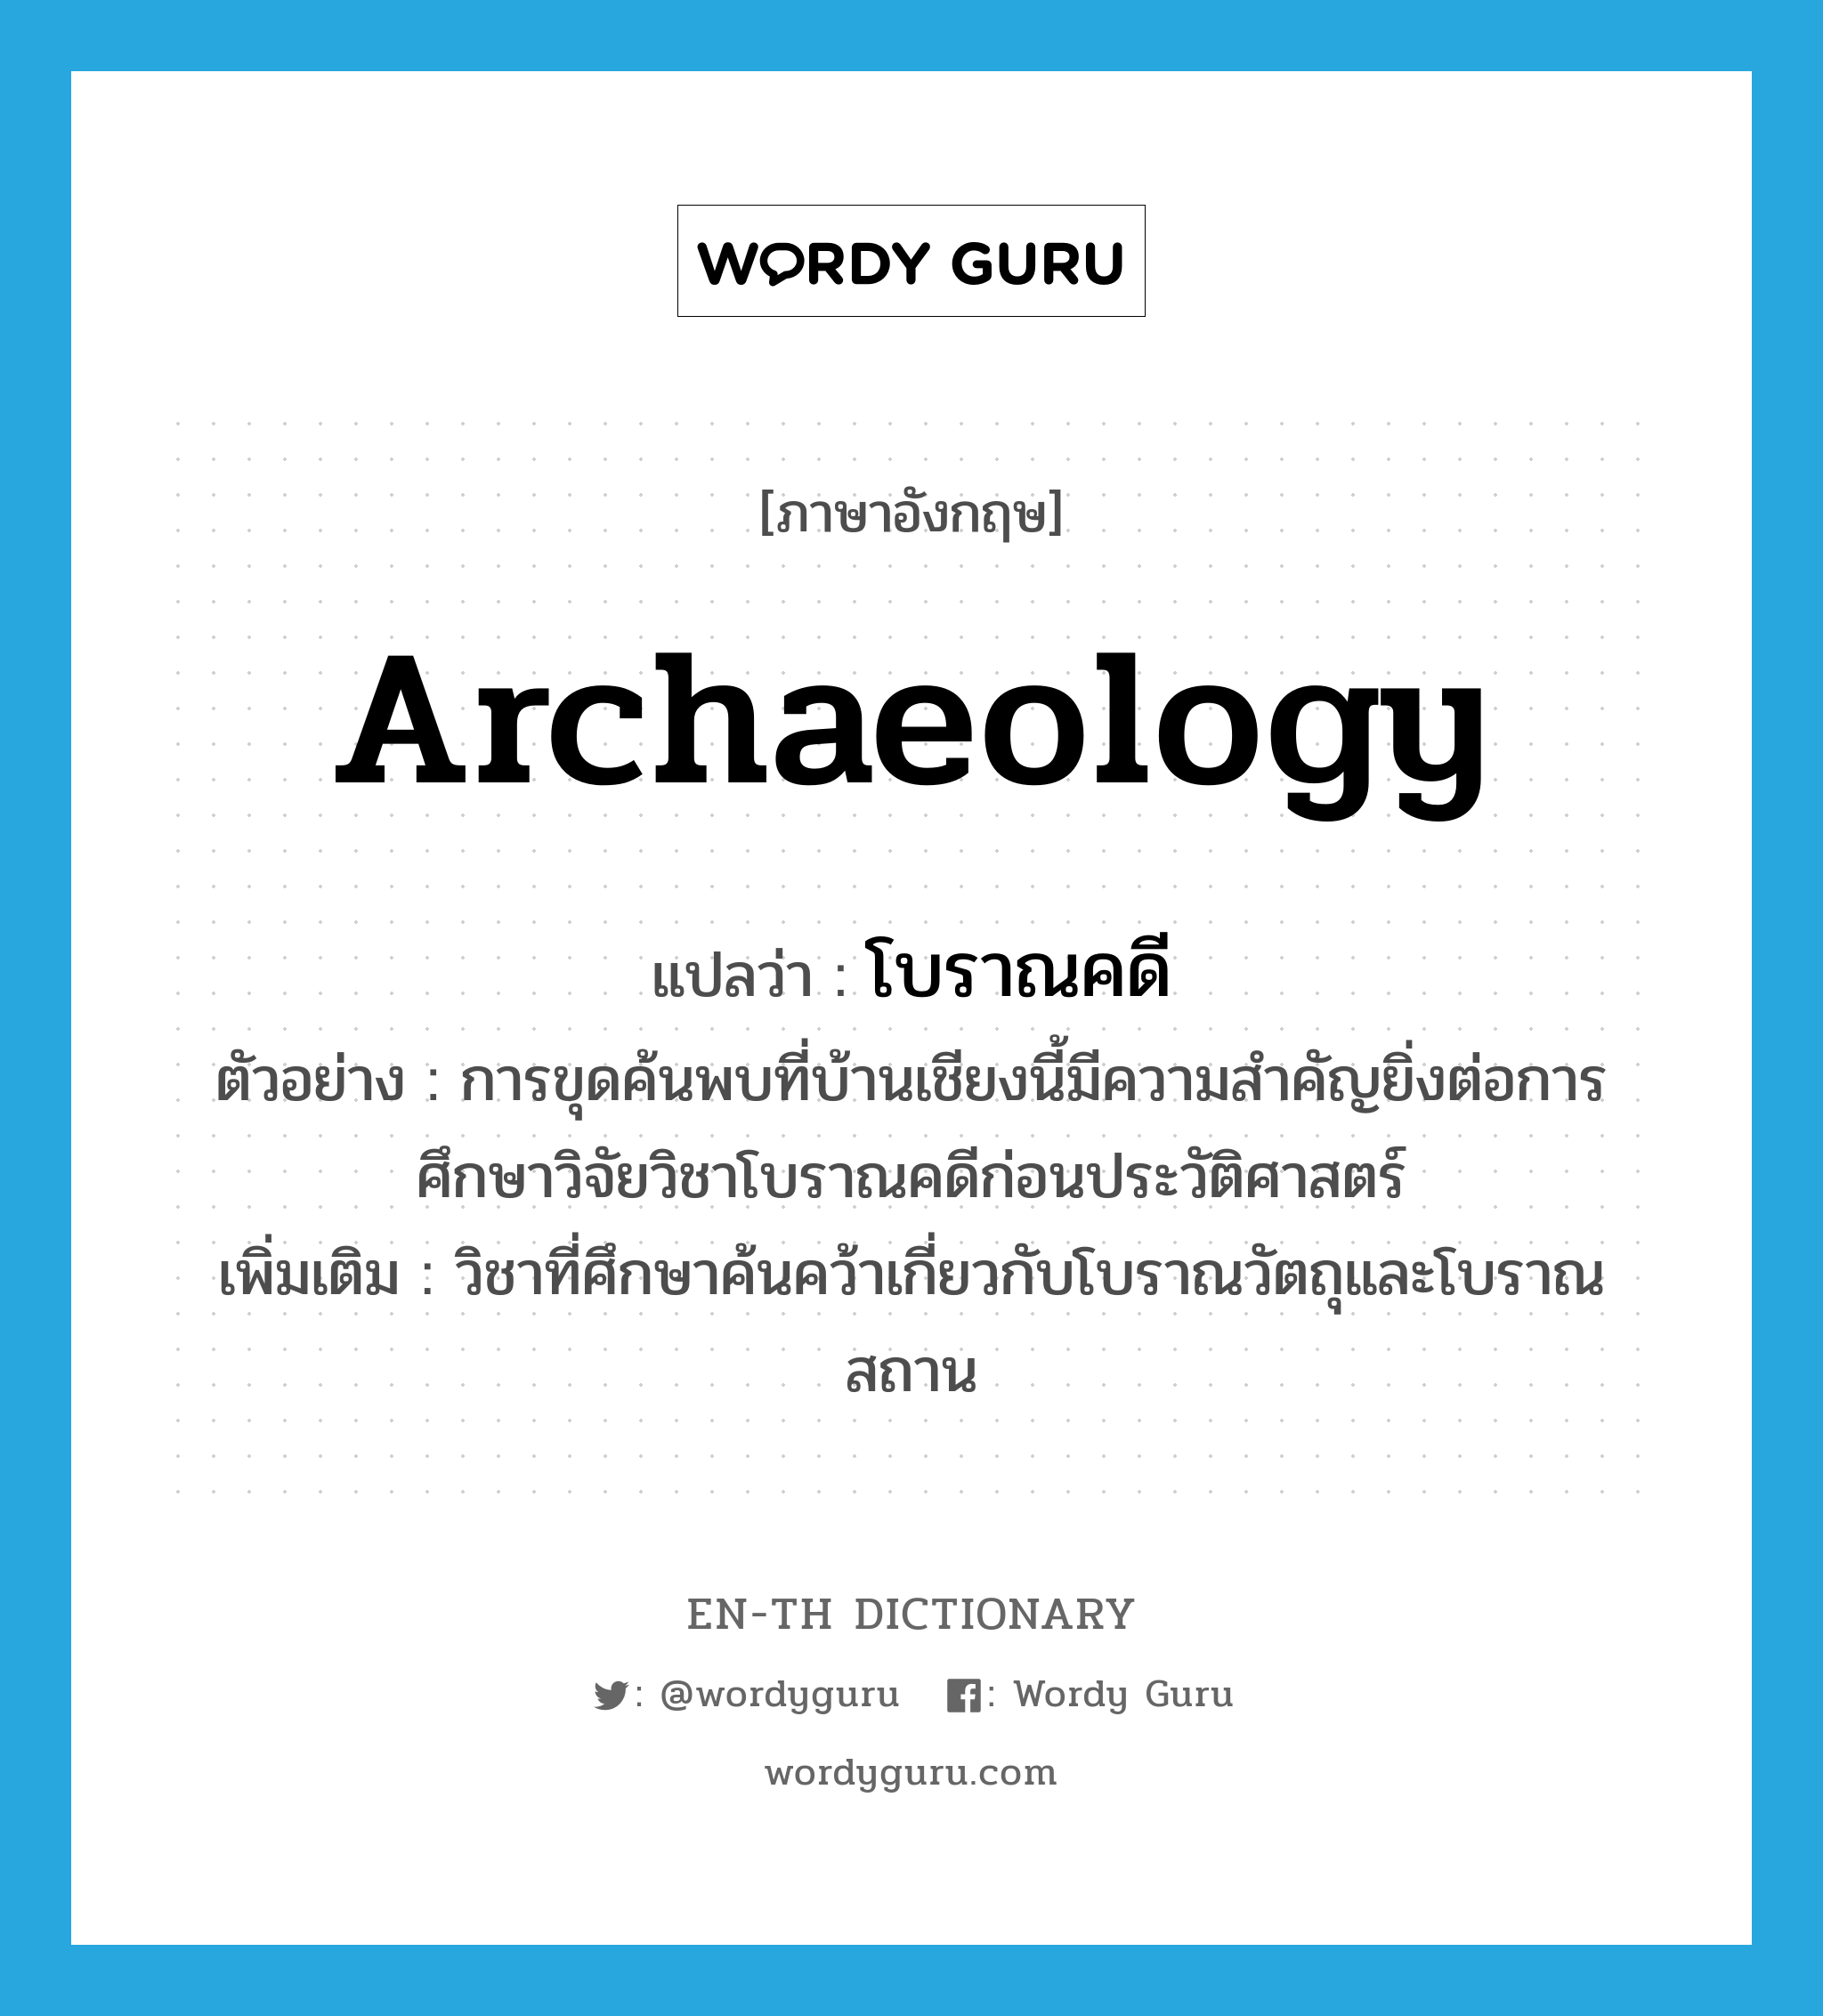 archaeology แปลว่า?, คำศัพท์ภาษาอังกฤษ archaeology แปลว่า โบราณคดี ประเภท N ตัวอย่าง การขุดค้นพบที่บ้านเชียงนี้มีความสำคัญยิ่งต่อการศึกษาวิจัยวิชาโบราณคดีก่อนประวัติศาสตร์ เพิ่มเติม วิชาที่ศึกษาค้นคว้าเกี่ยวกับโบราณวัตถุและโบราณสถาน หมวด N